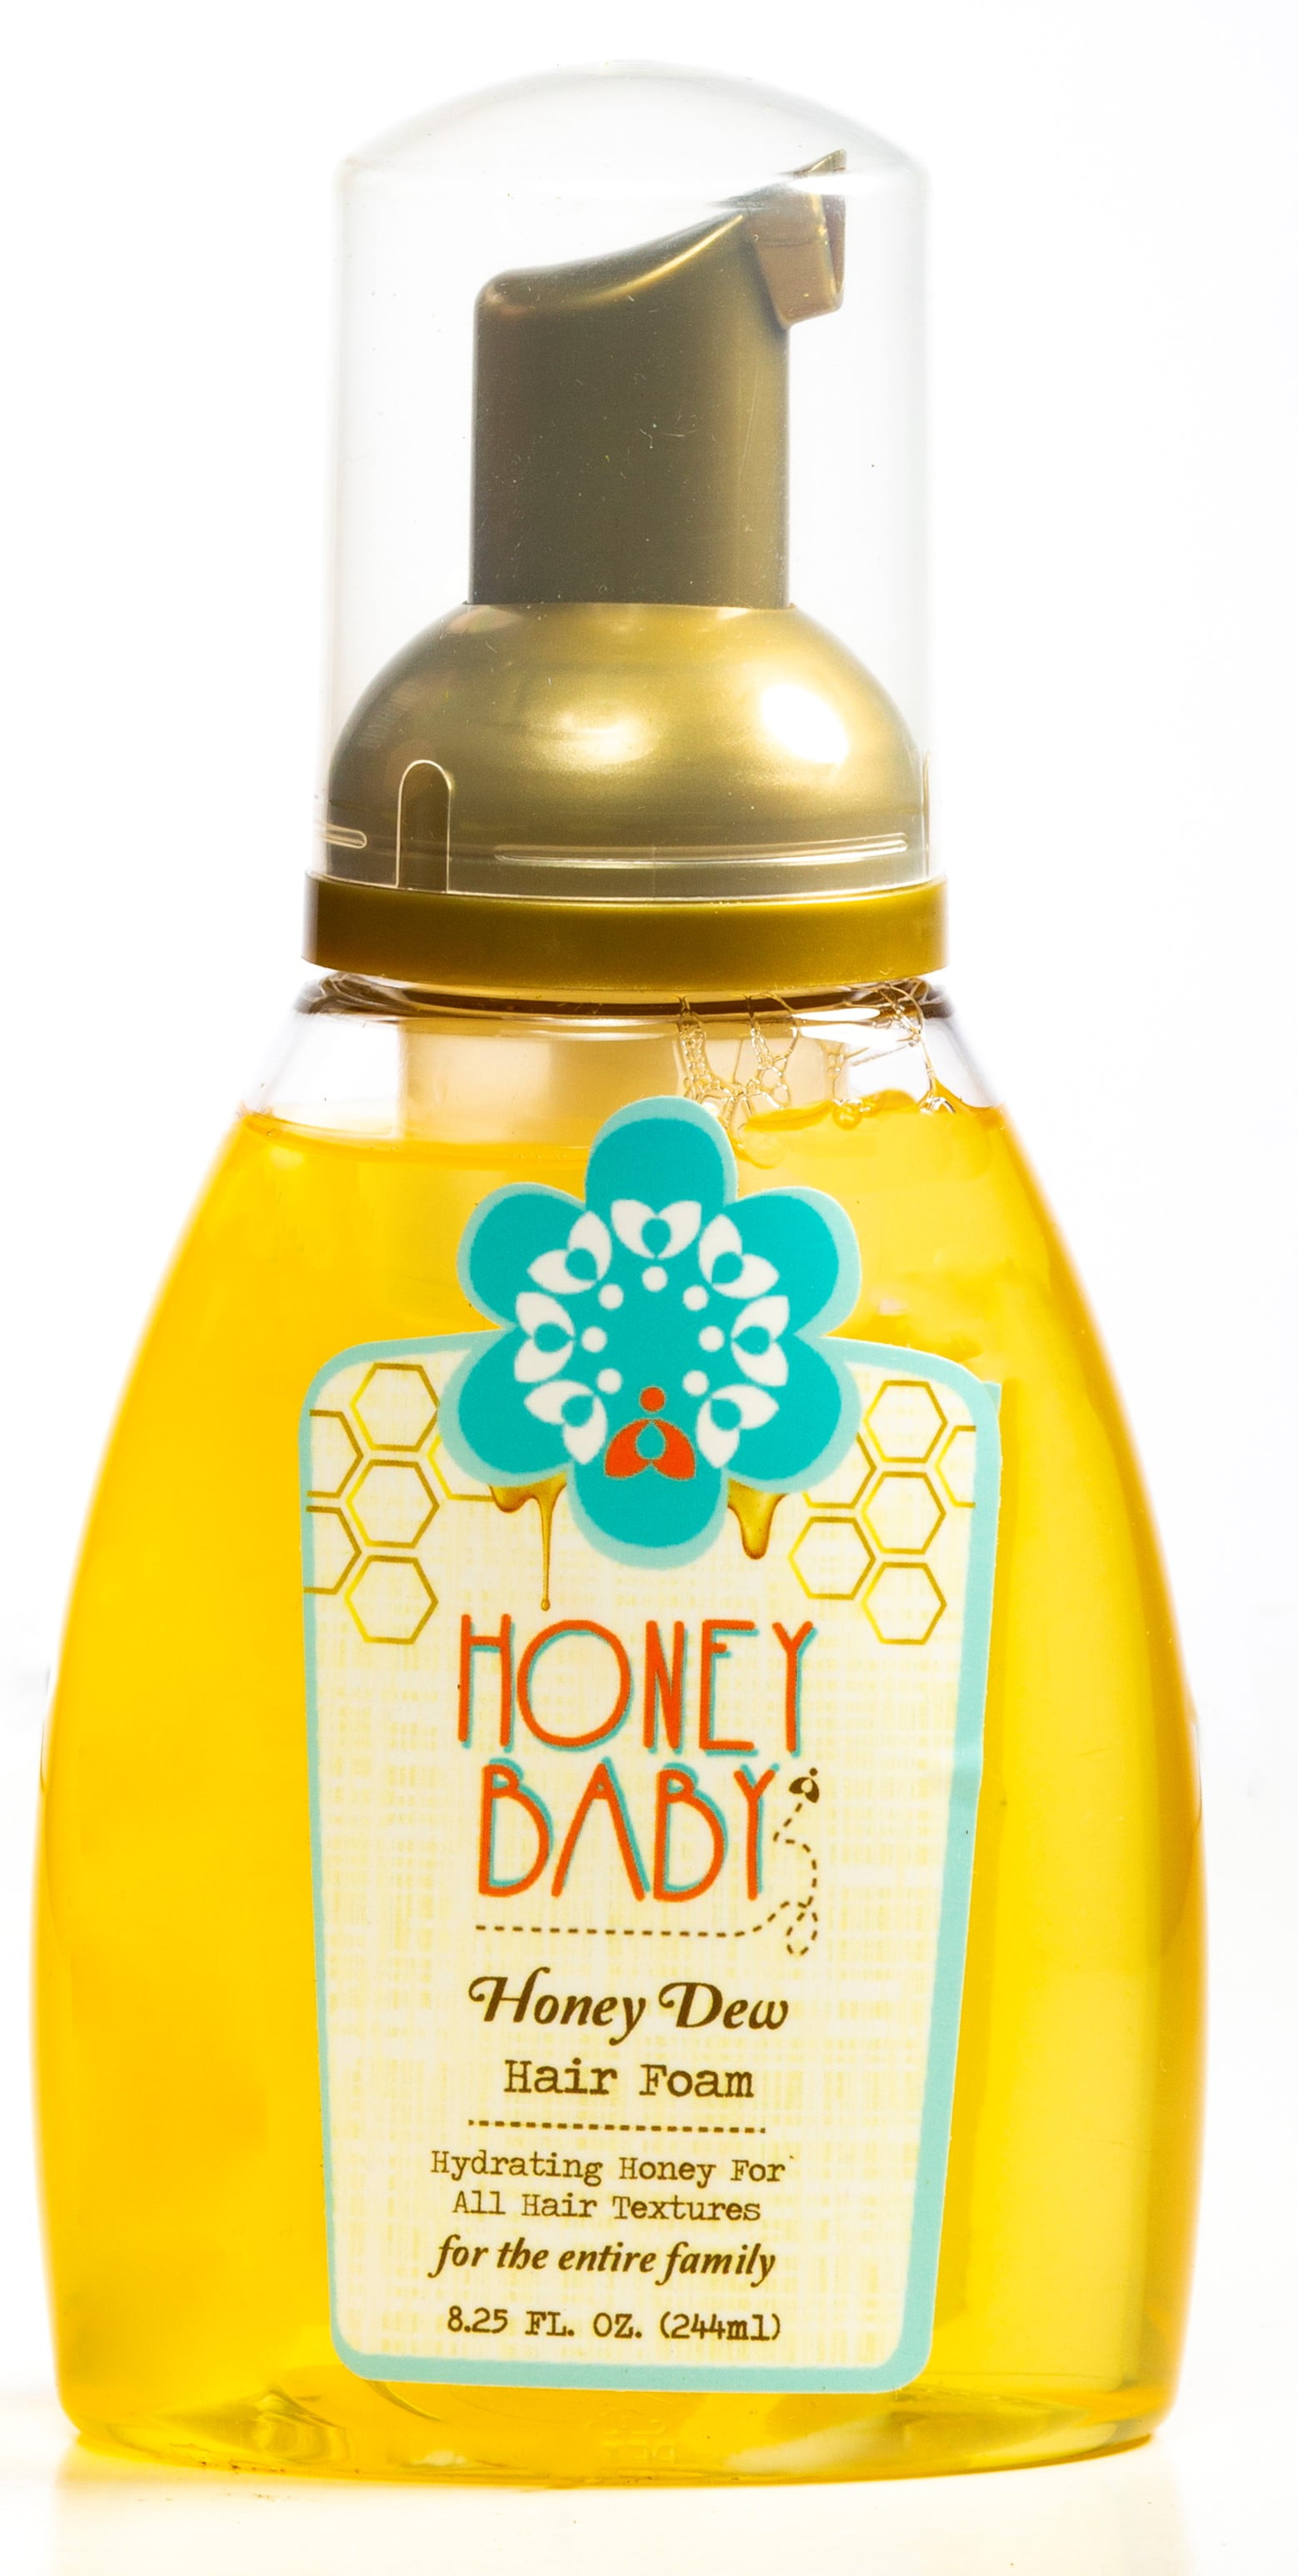 Honey dew goddess 